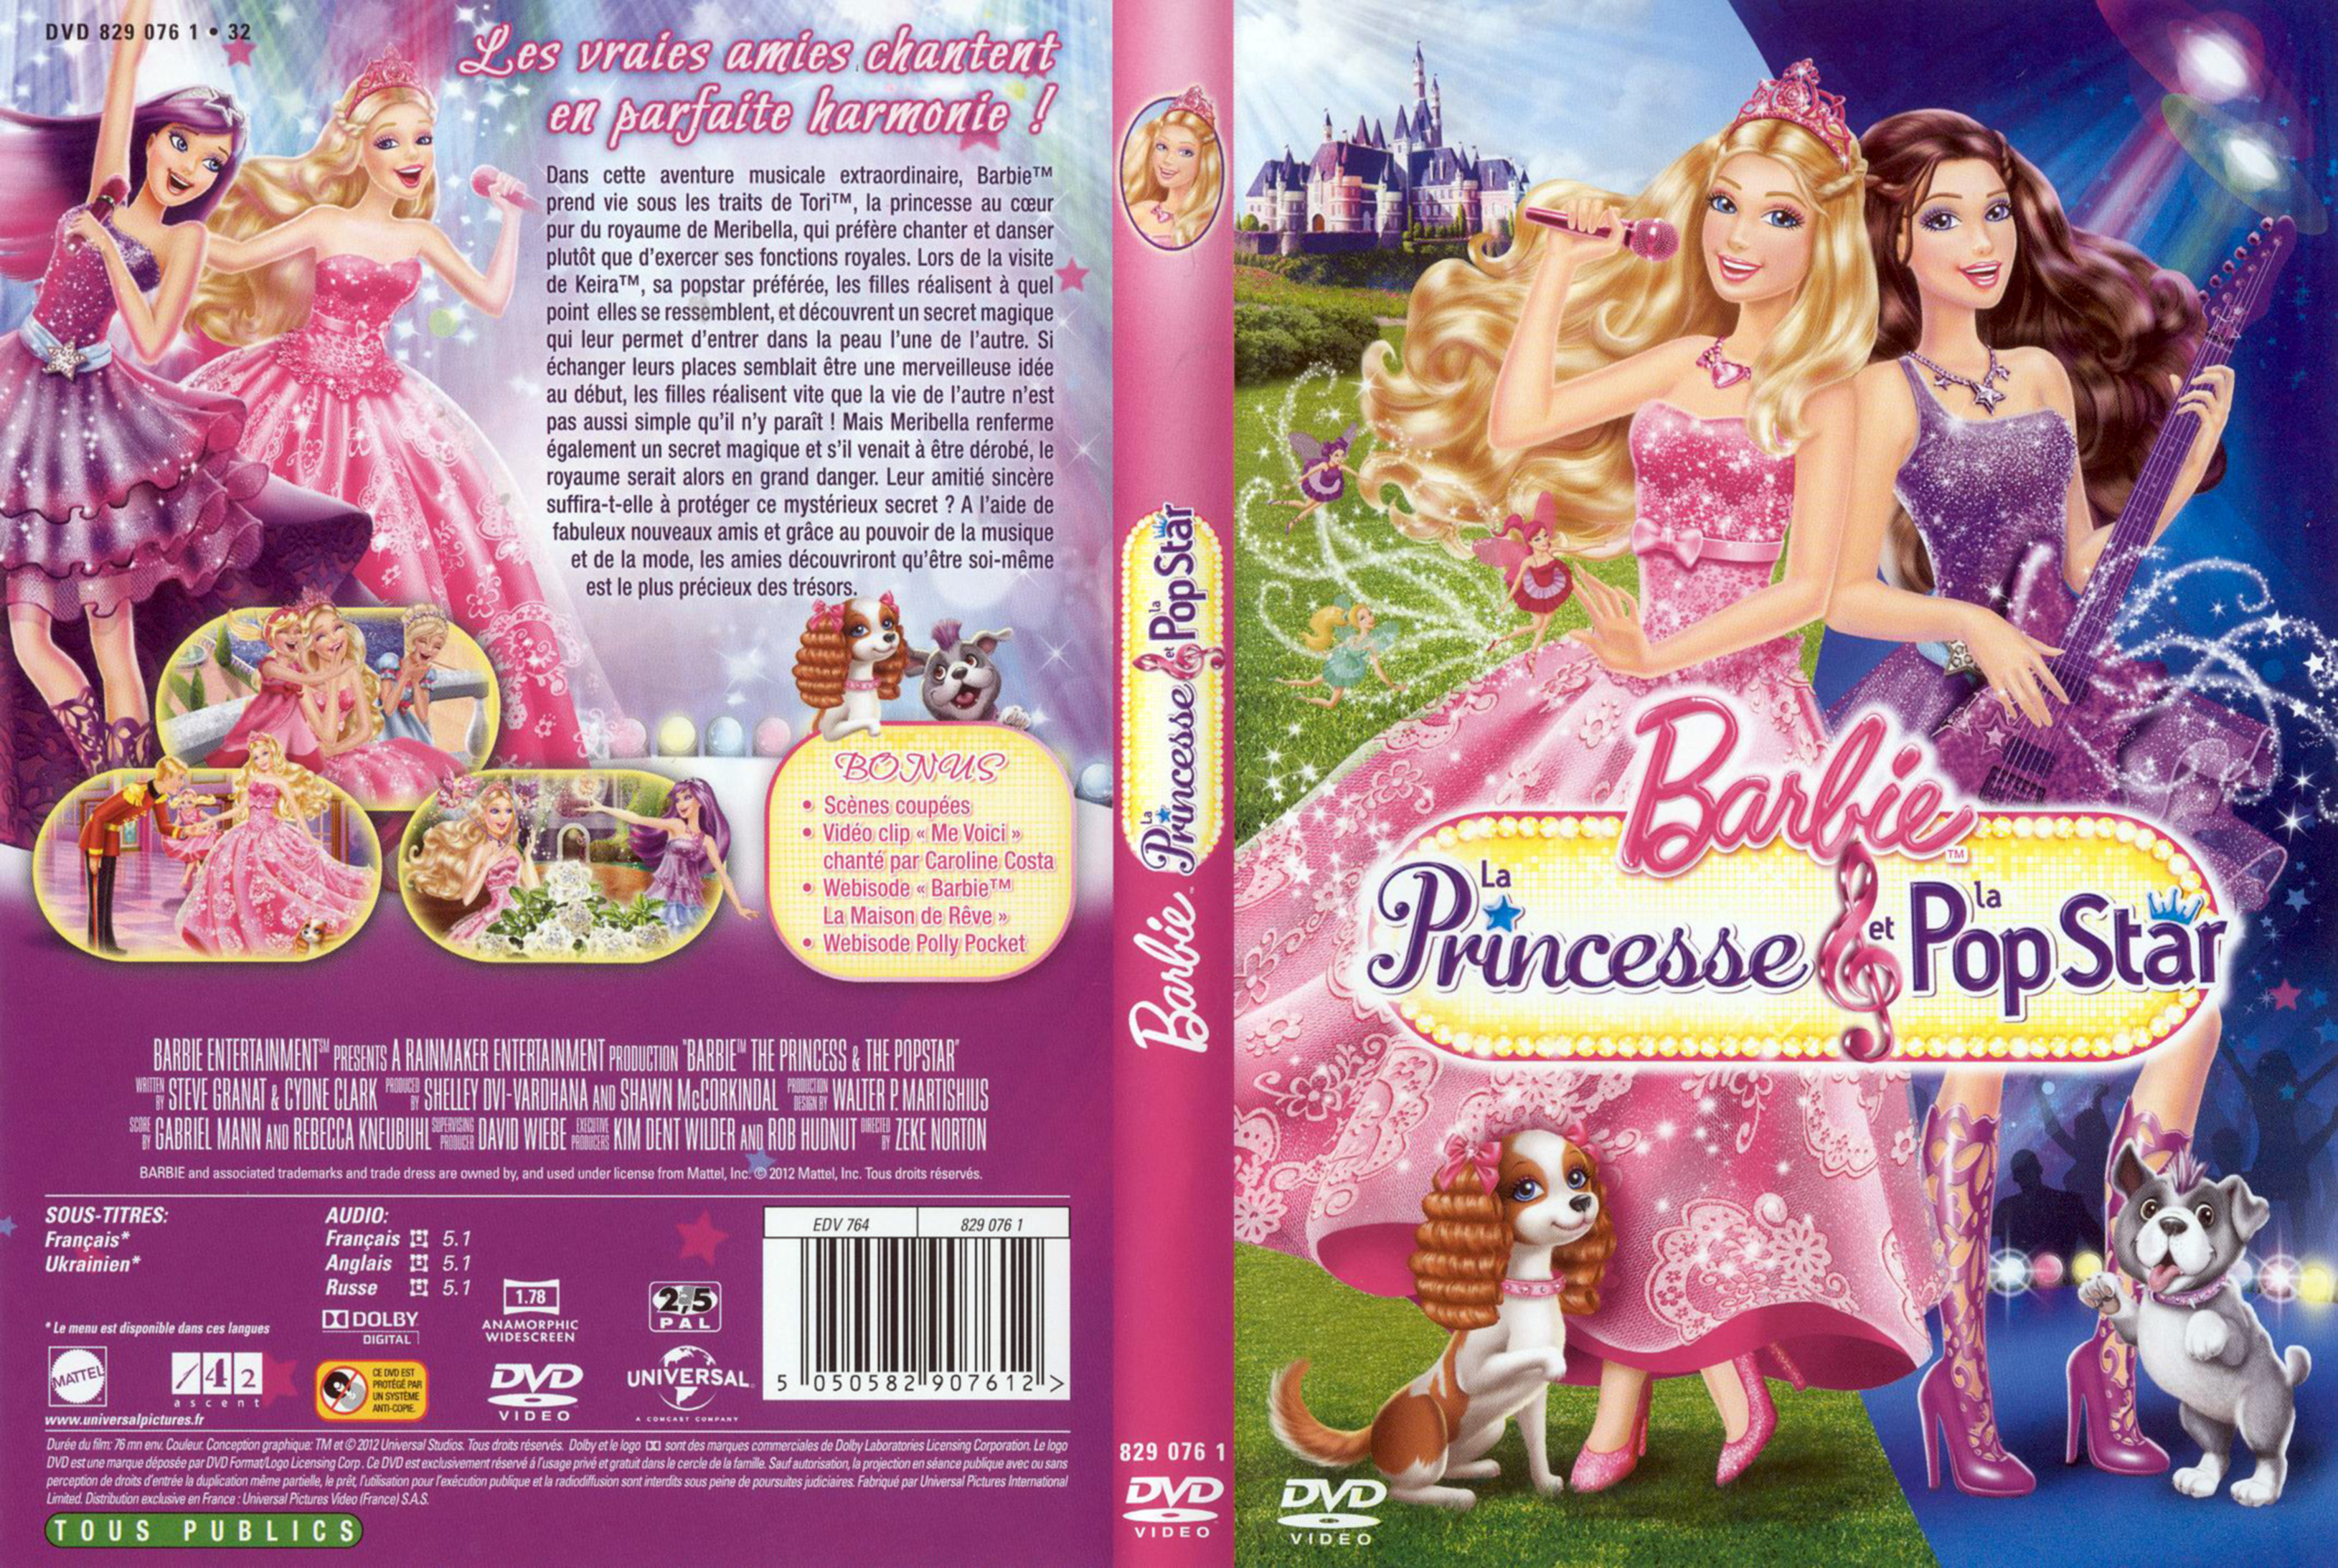 Jaquette DVD Barbie la princesse et la popstar